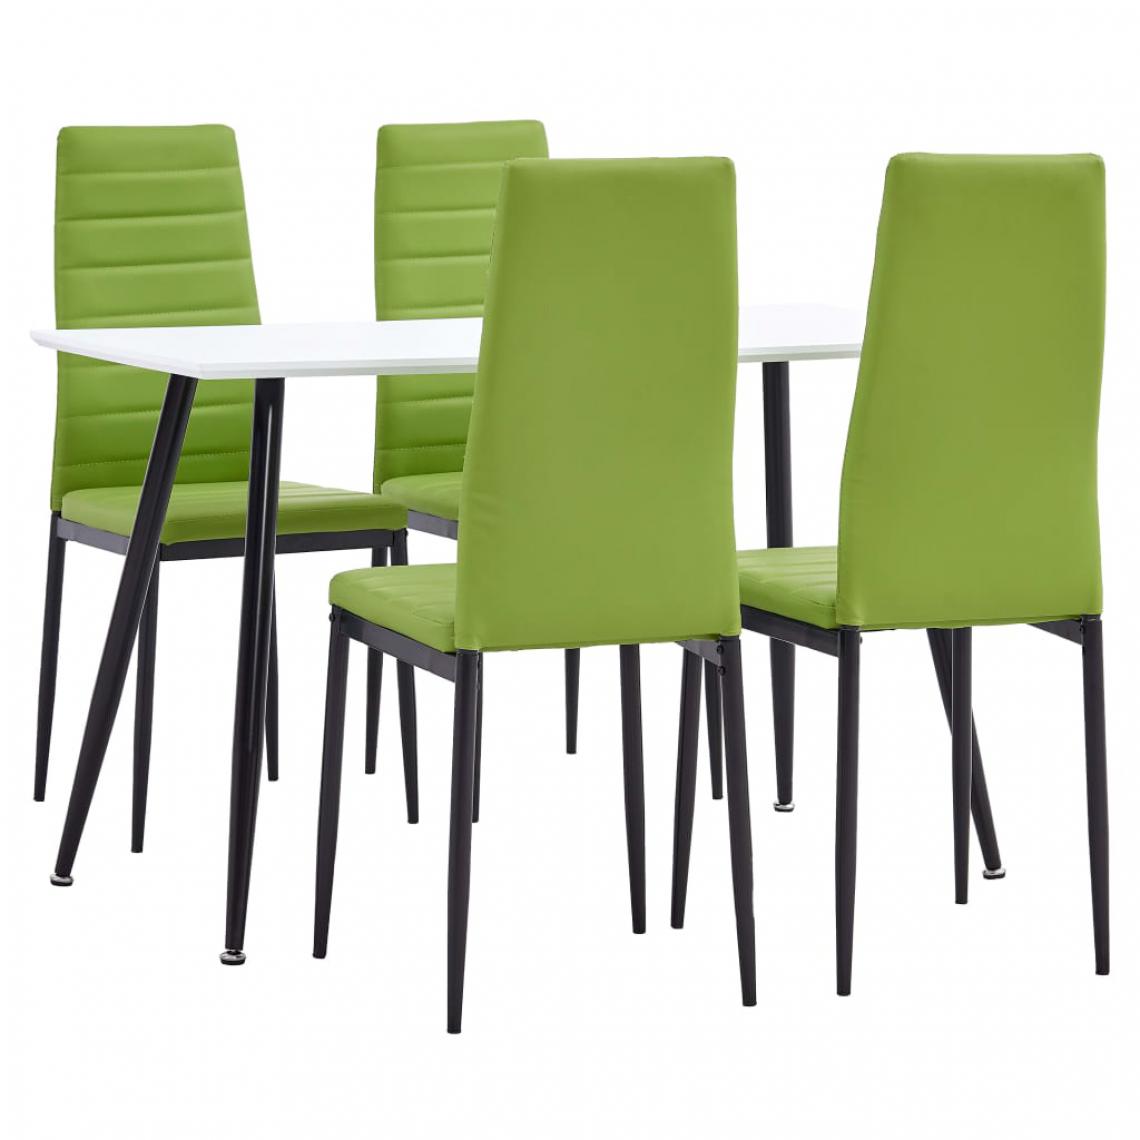 Chunhelife - Ensemble de salle à manger 5 pcs Similicuir Vert citron - Tables à manger